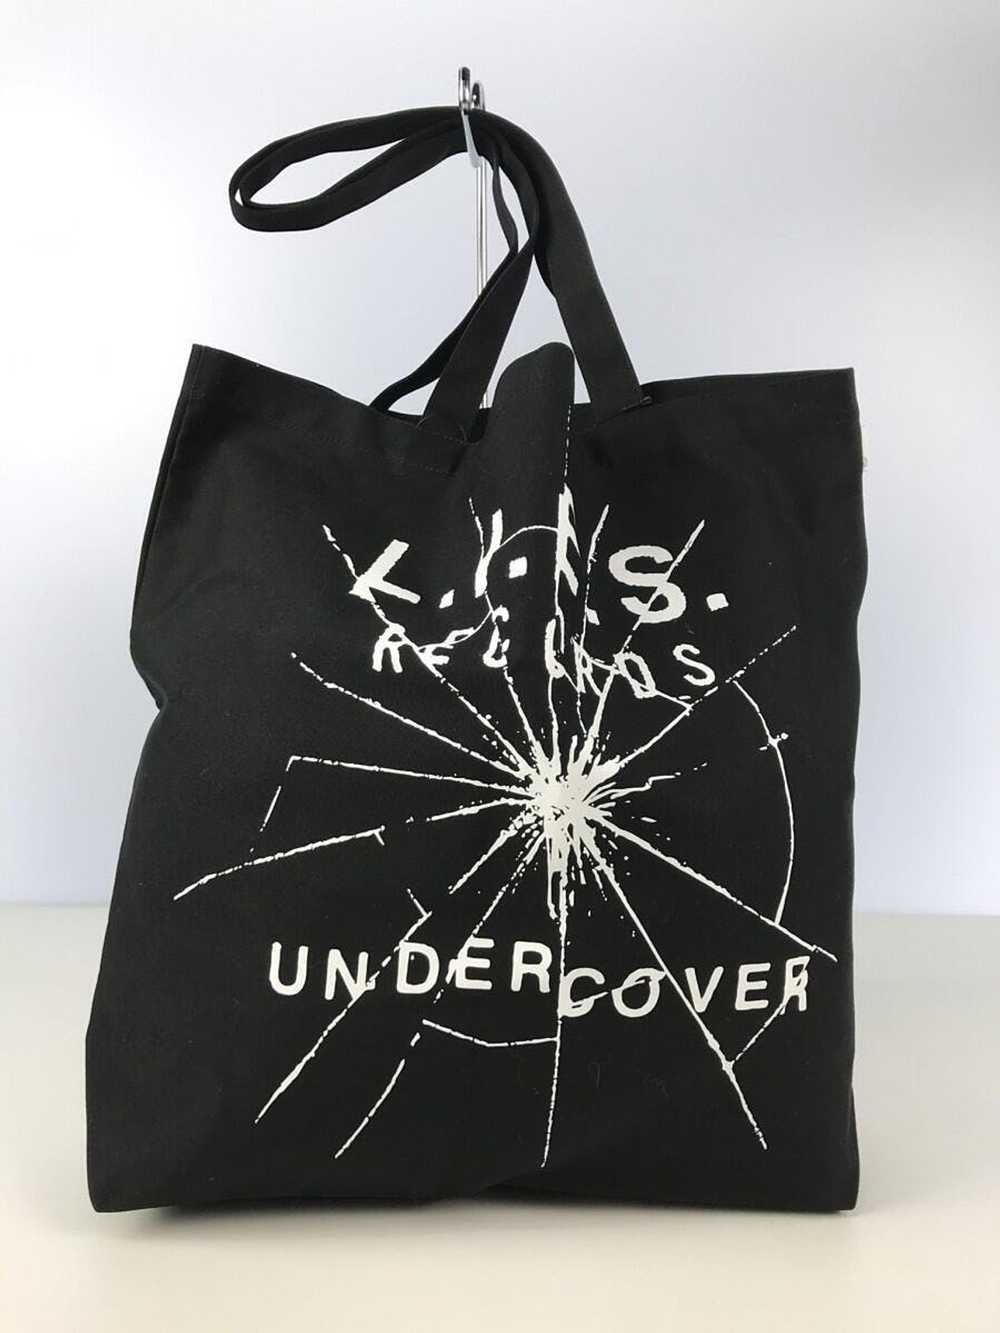 Undercover "L.I.E.S" Logo Tote Bag - image 1